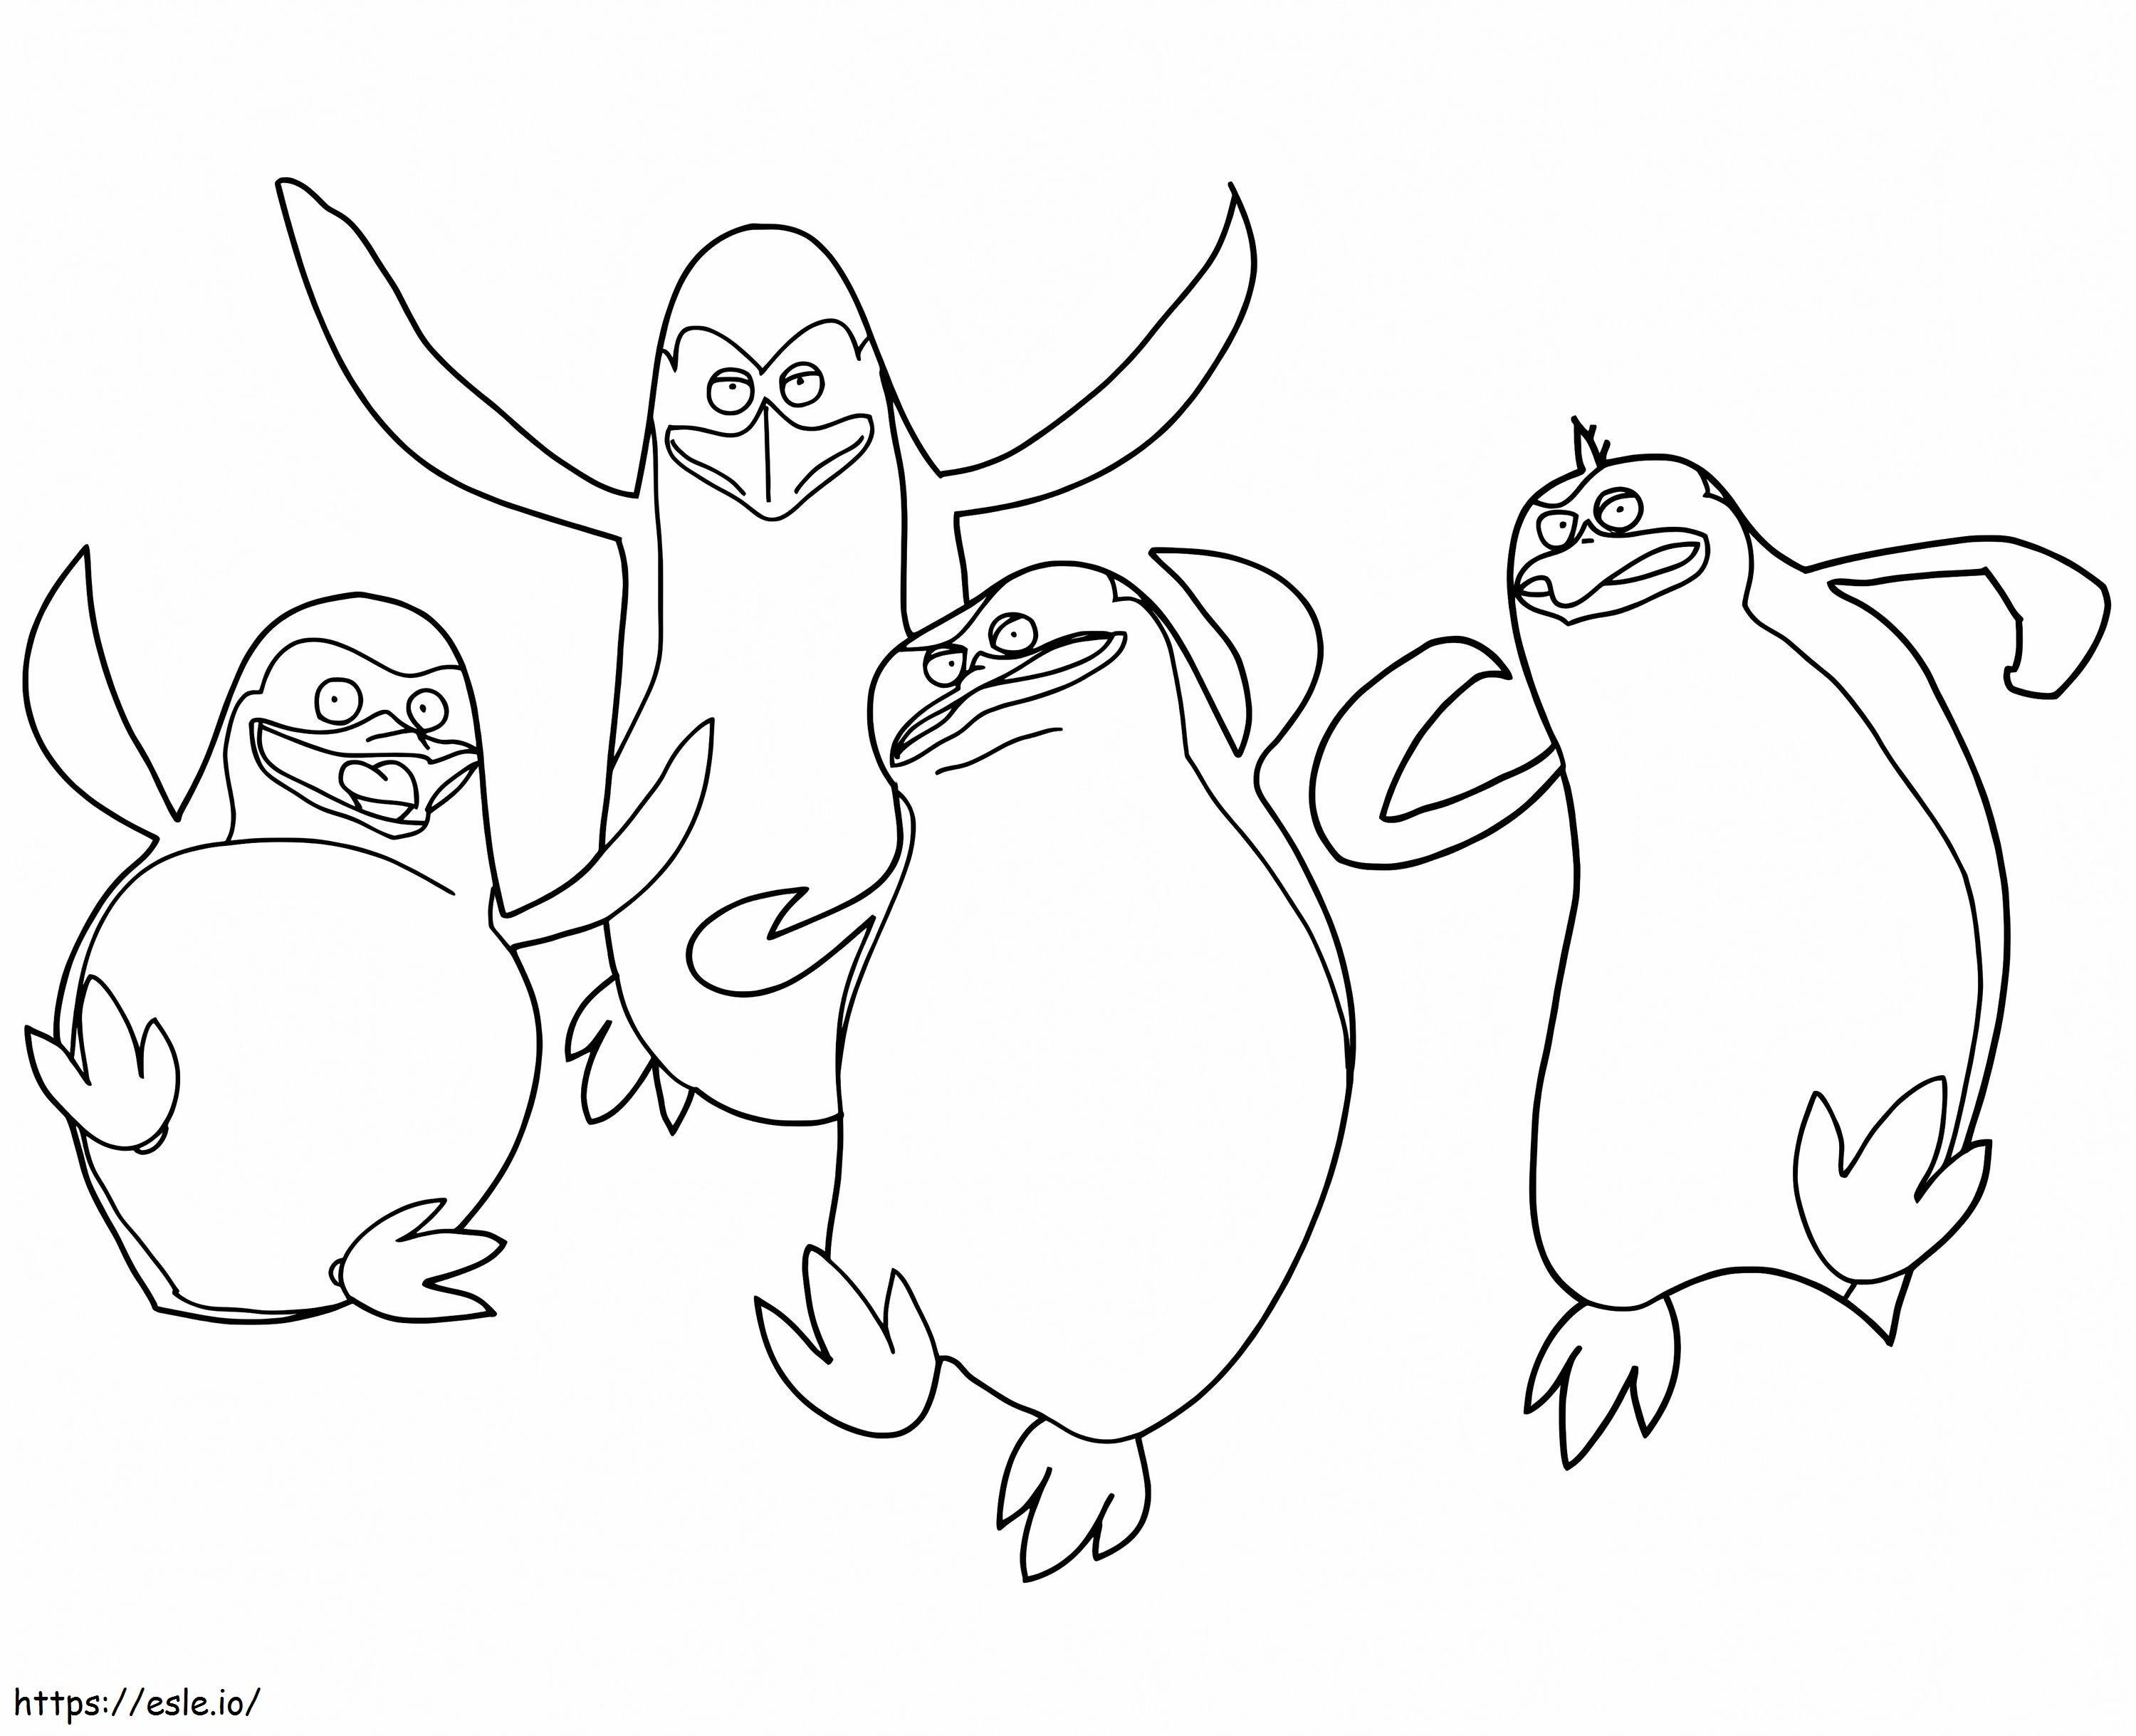 Pinguins de Madagascar para impressão para colorir